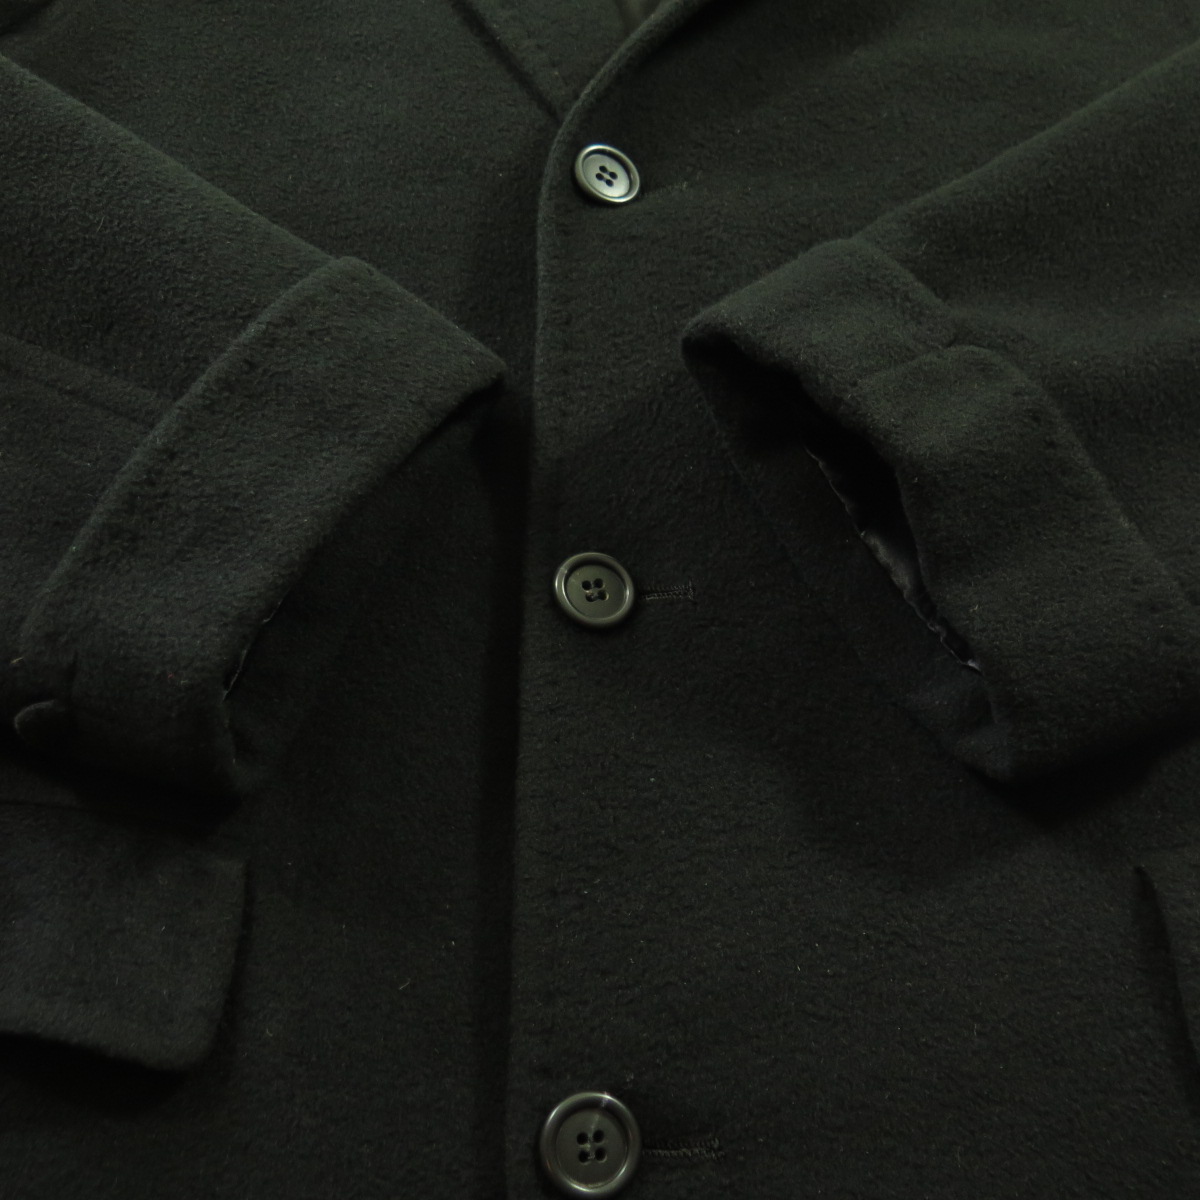 Vintage 60s Black 100% Cashmere Overcoat Coat 42 or Large Black Soft ...